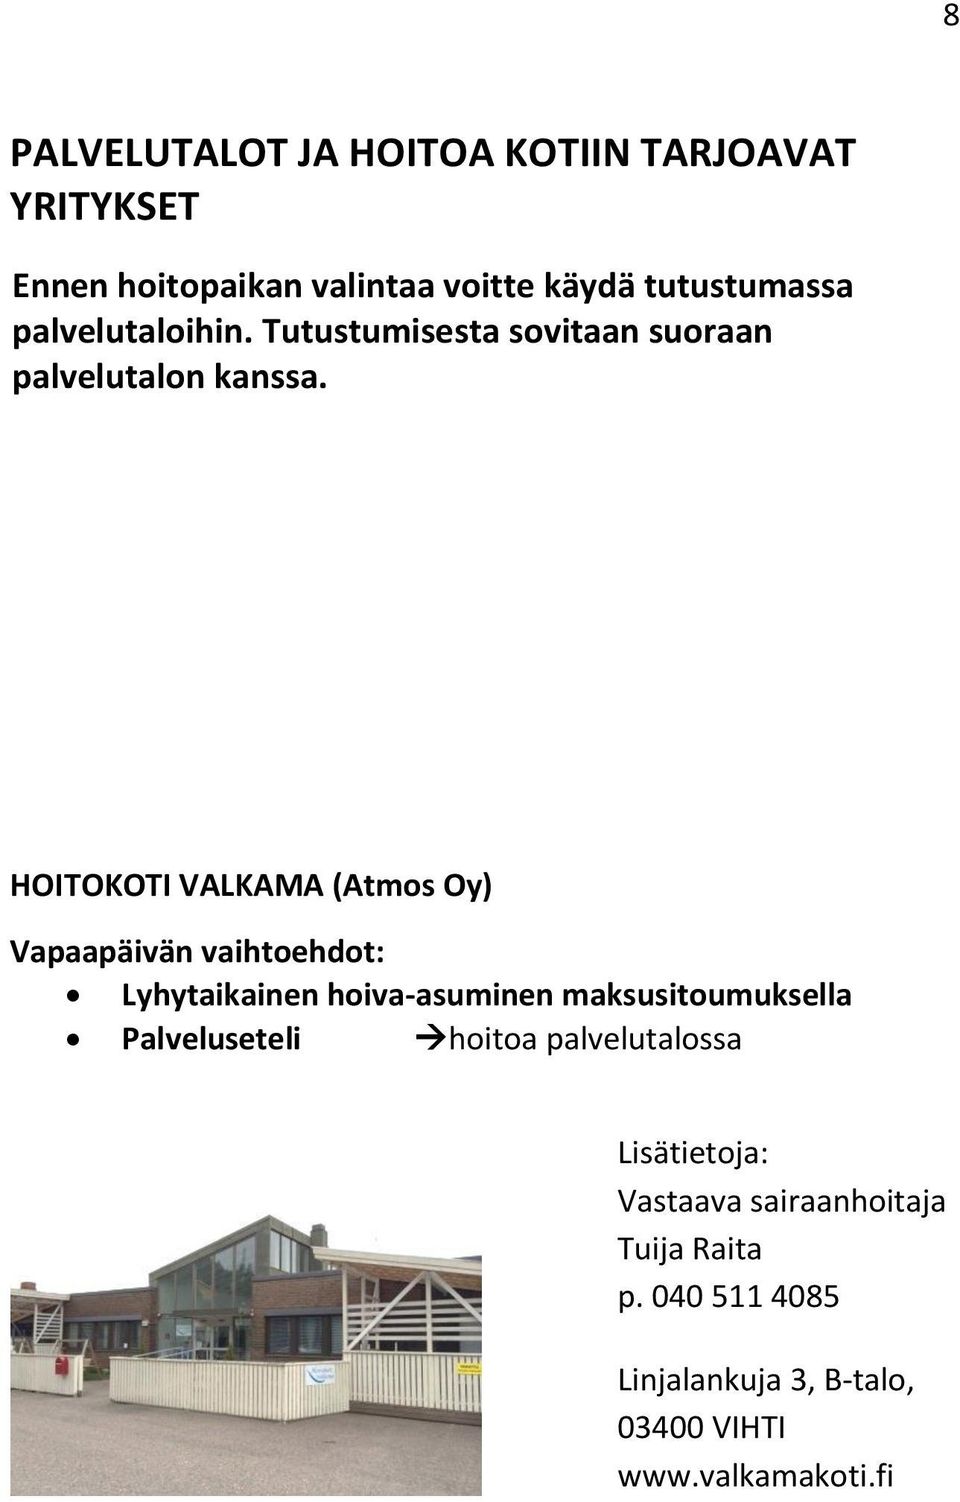 HOITOKOTI VALKAMA (Atmos Oy) Lyhytaikainen hoiva-asuminen maksusitoumuksella Vastaava